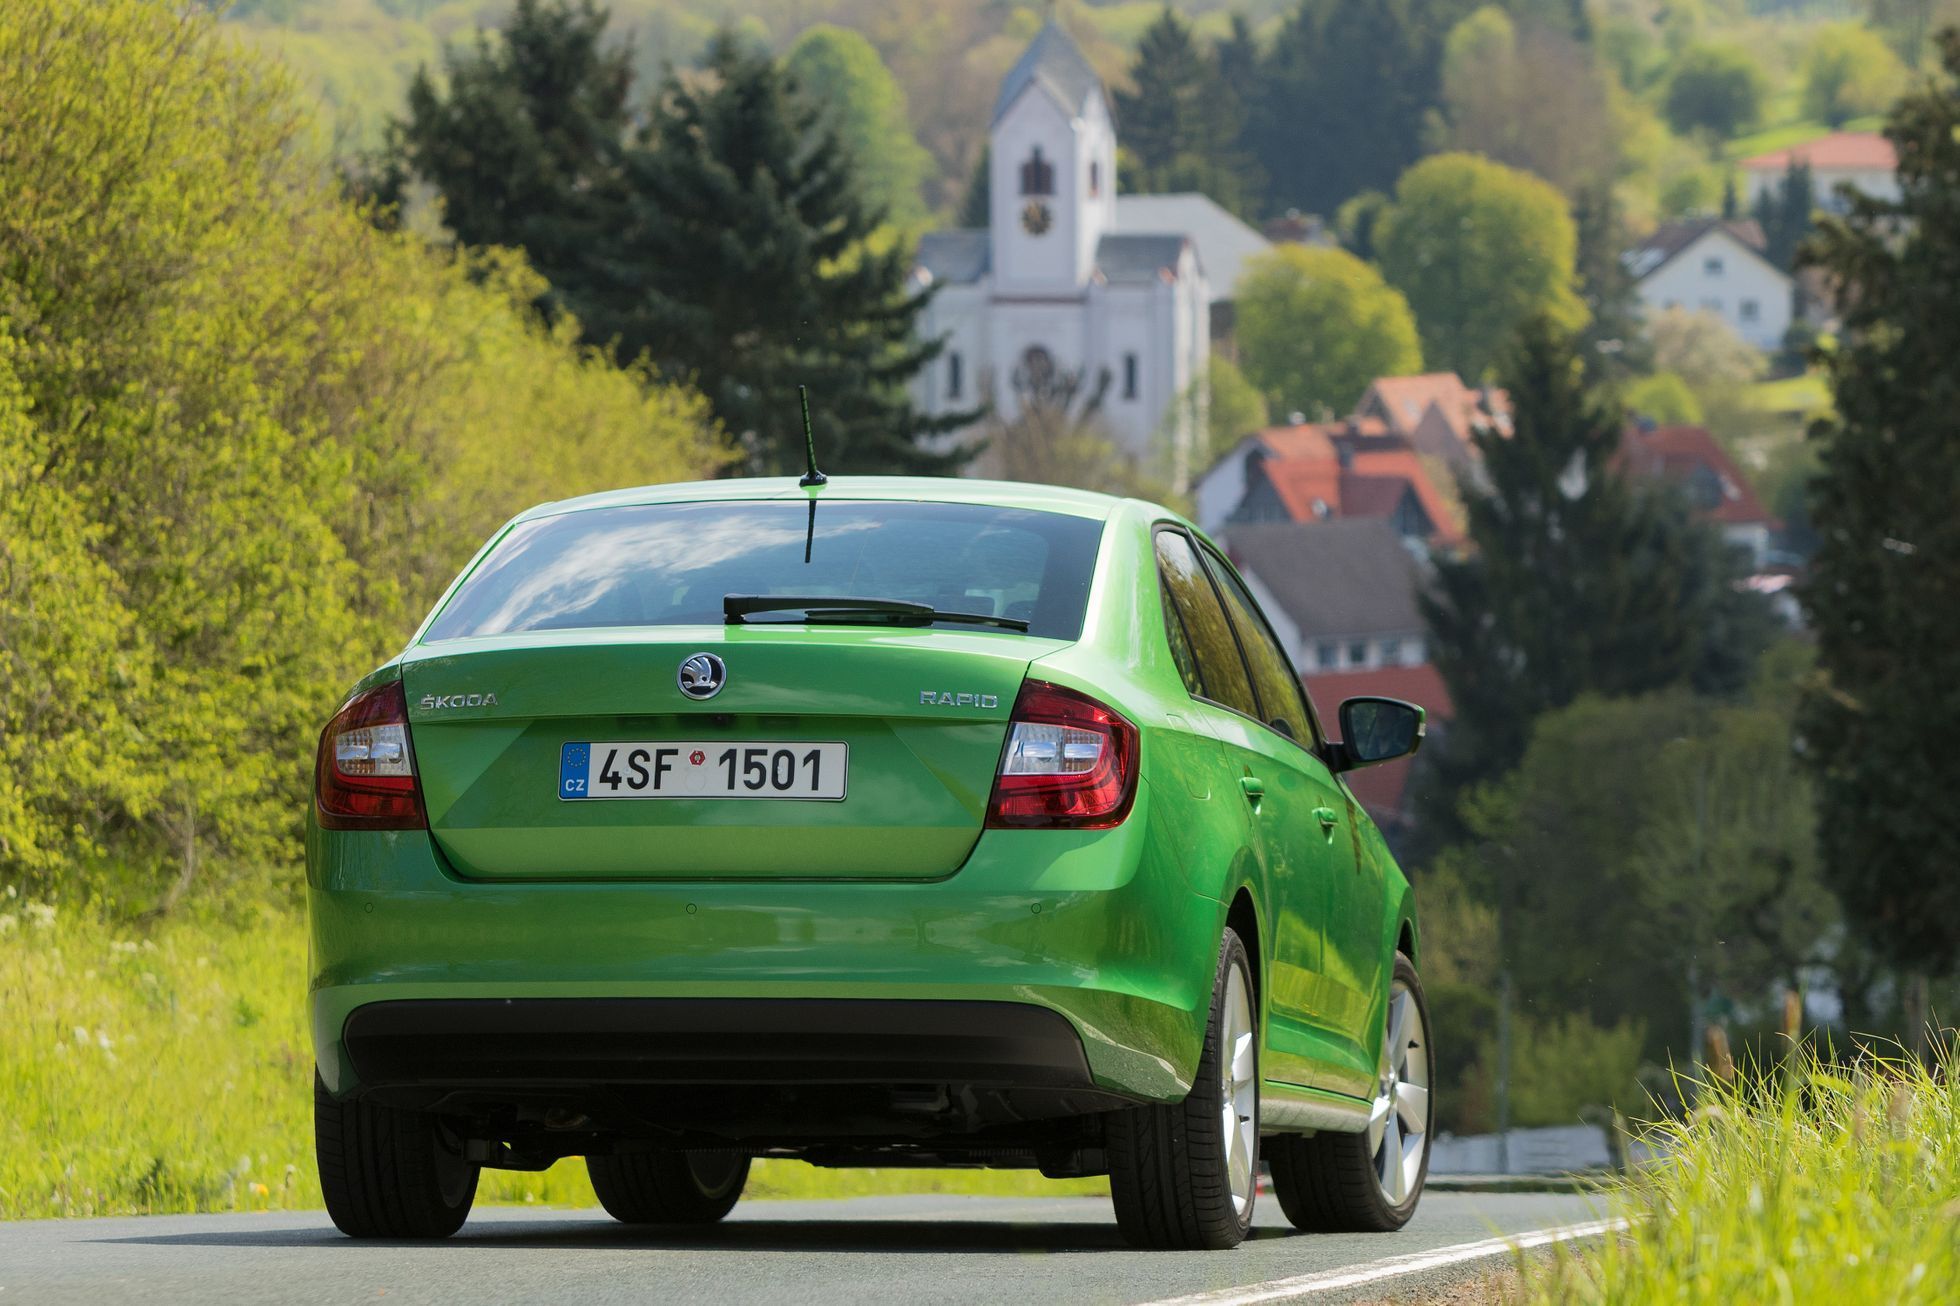 Škoda Rapid facelift 2017